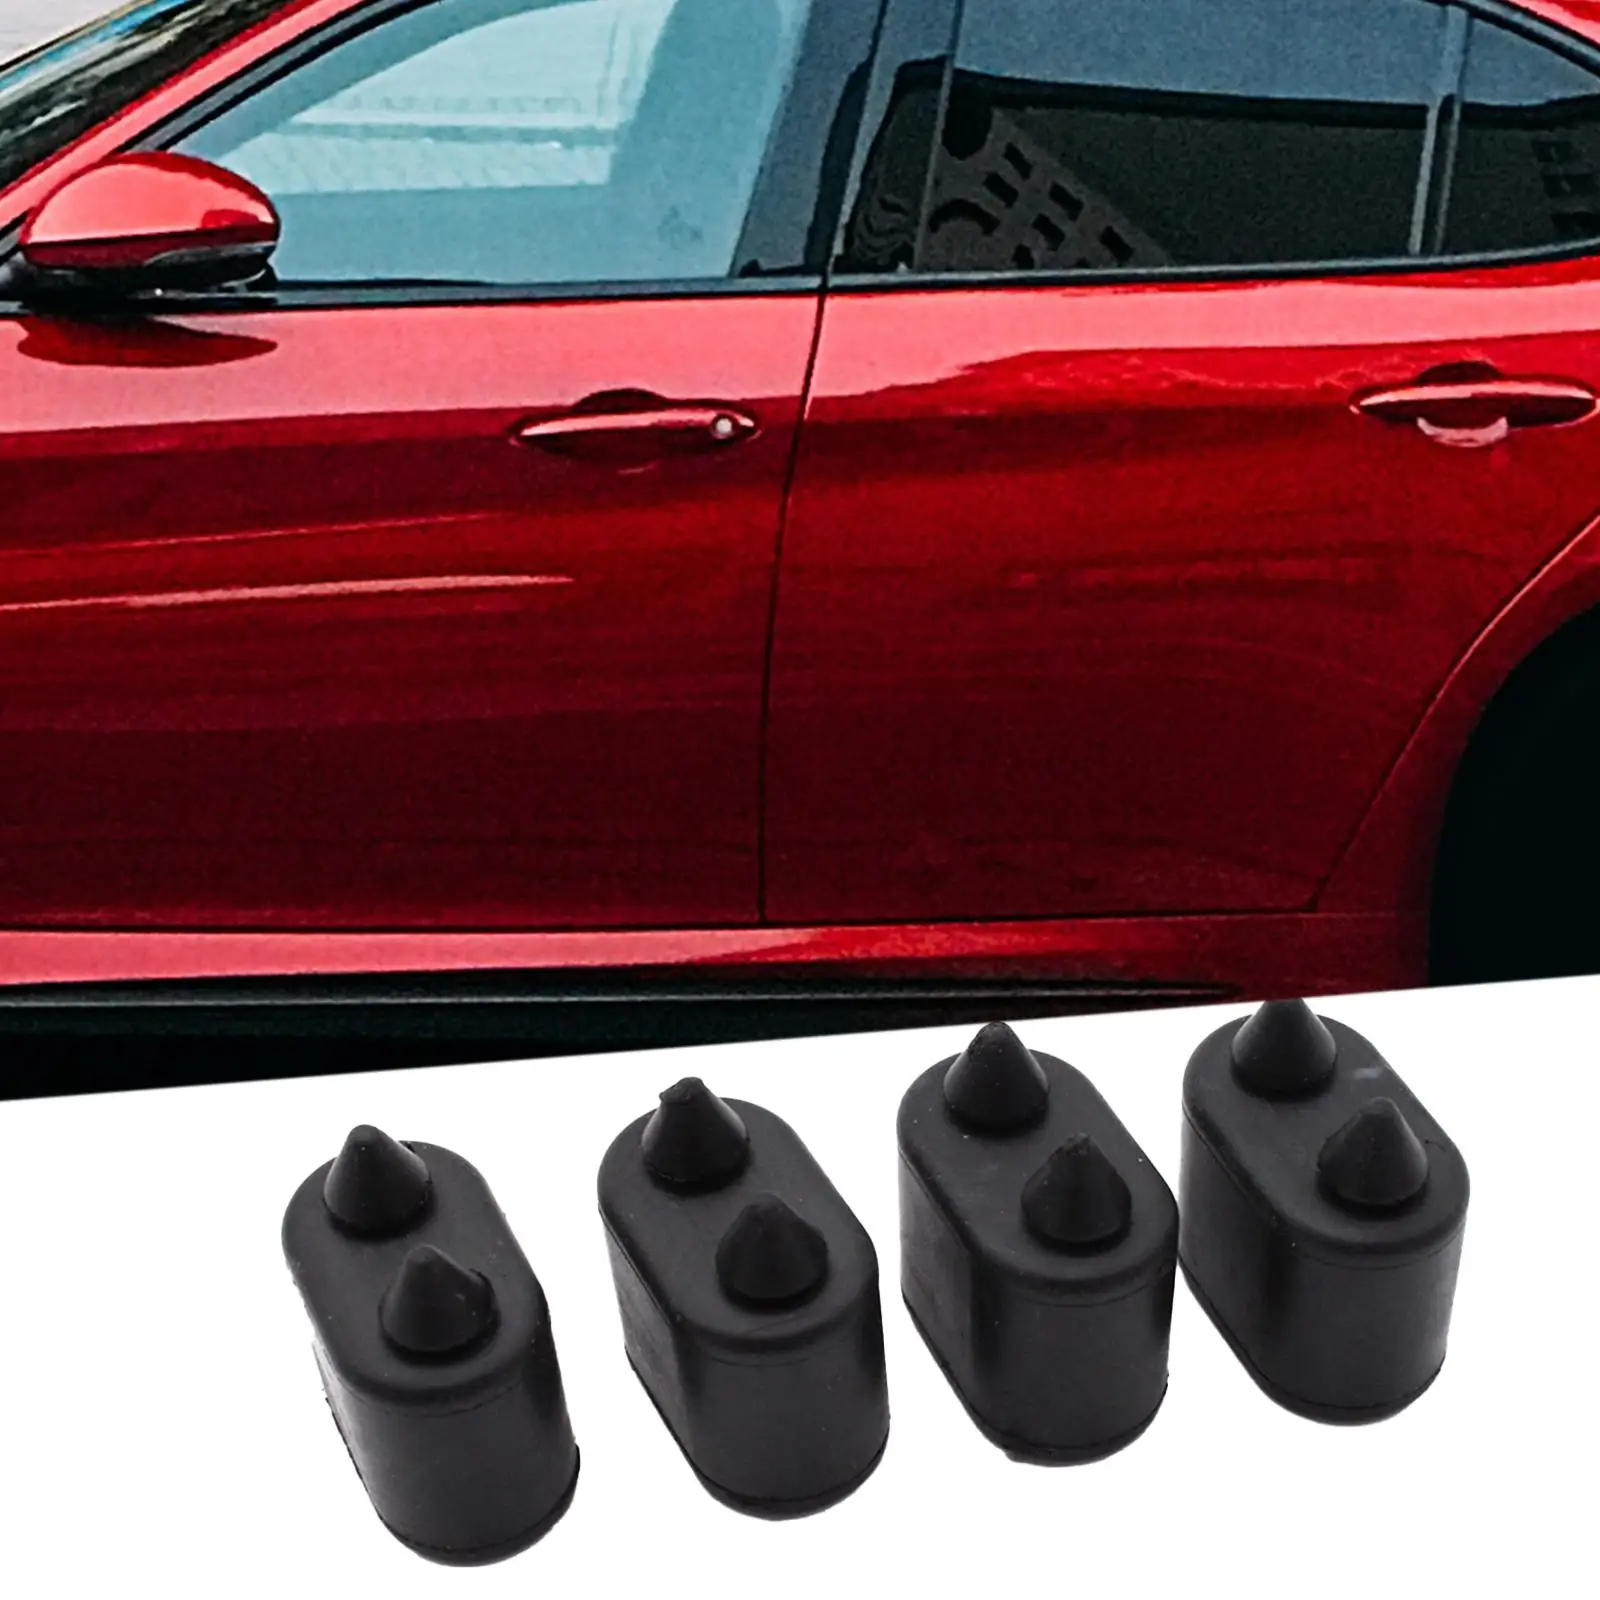 4 Pieces Car Door Jamb Body Bumpers Cushion Pads for Cutlass